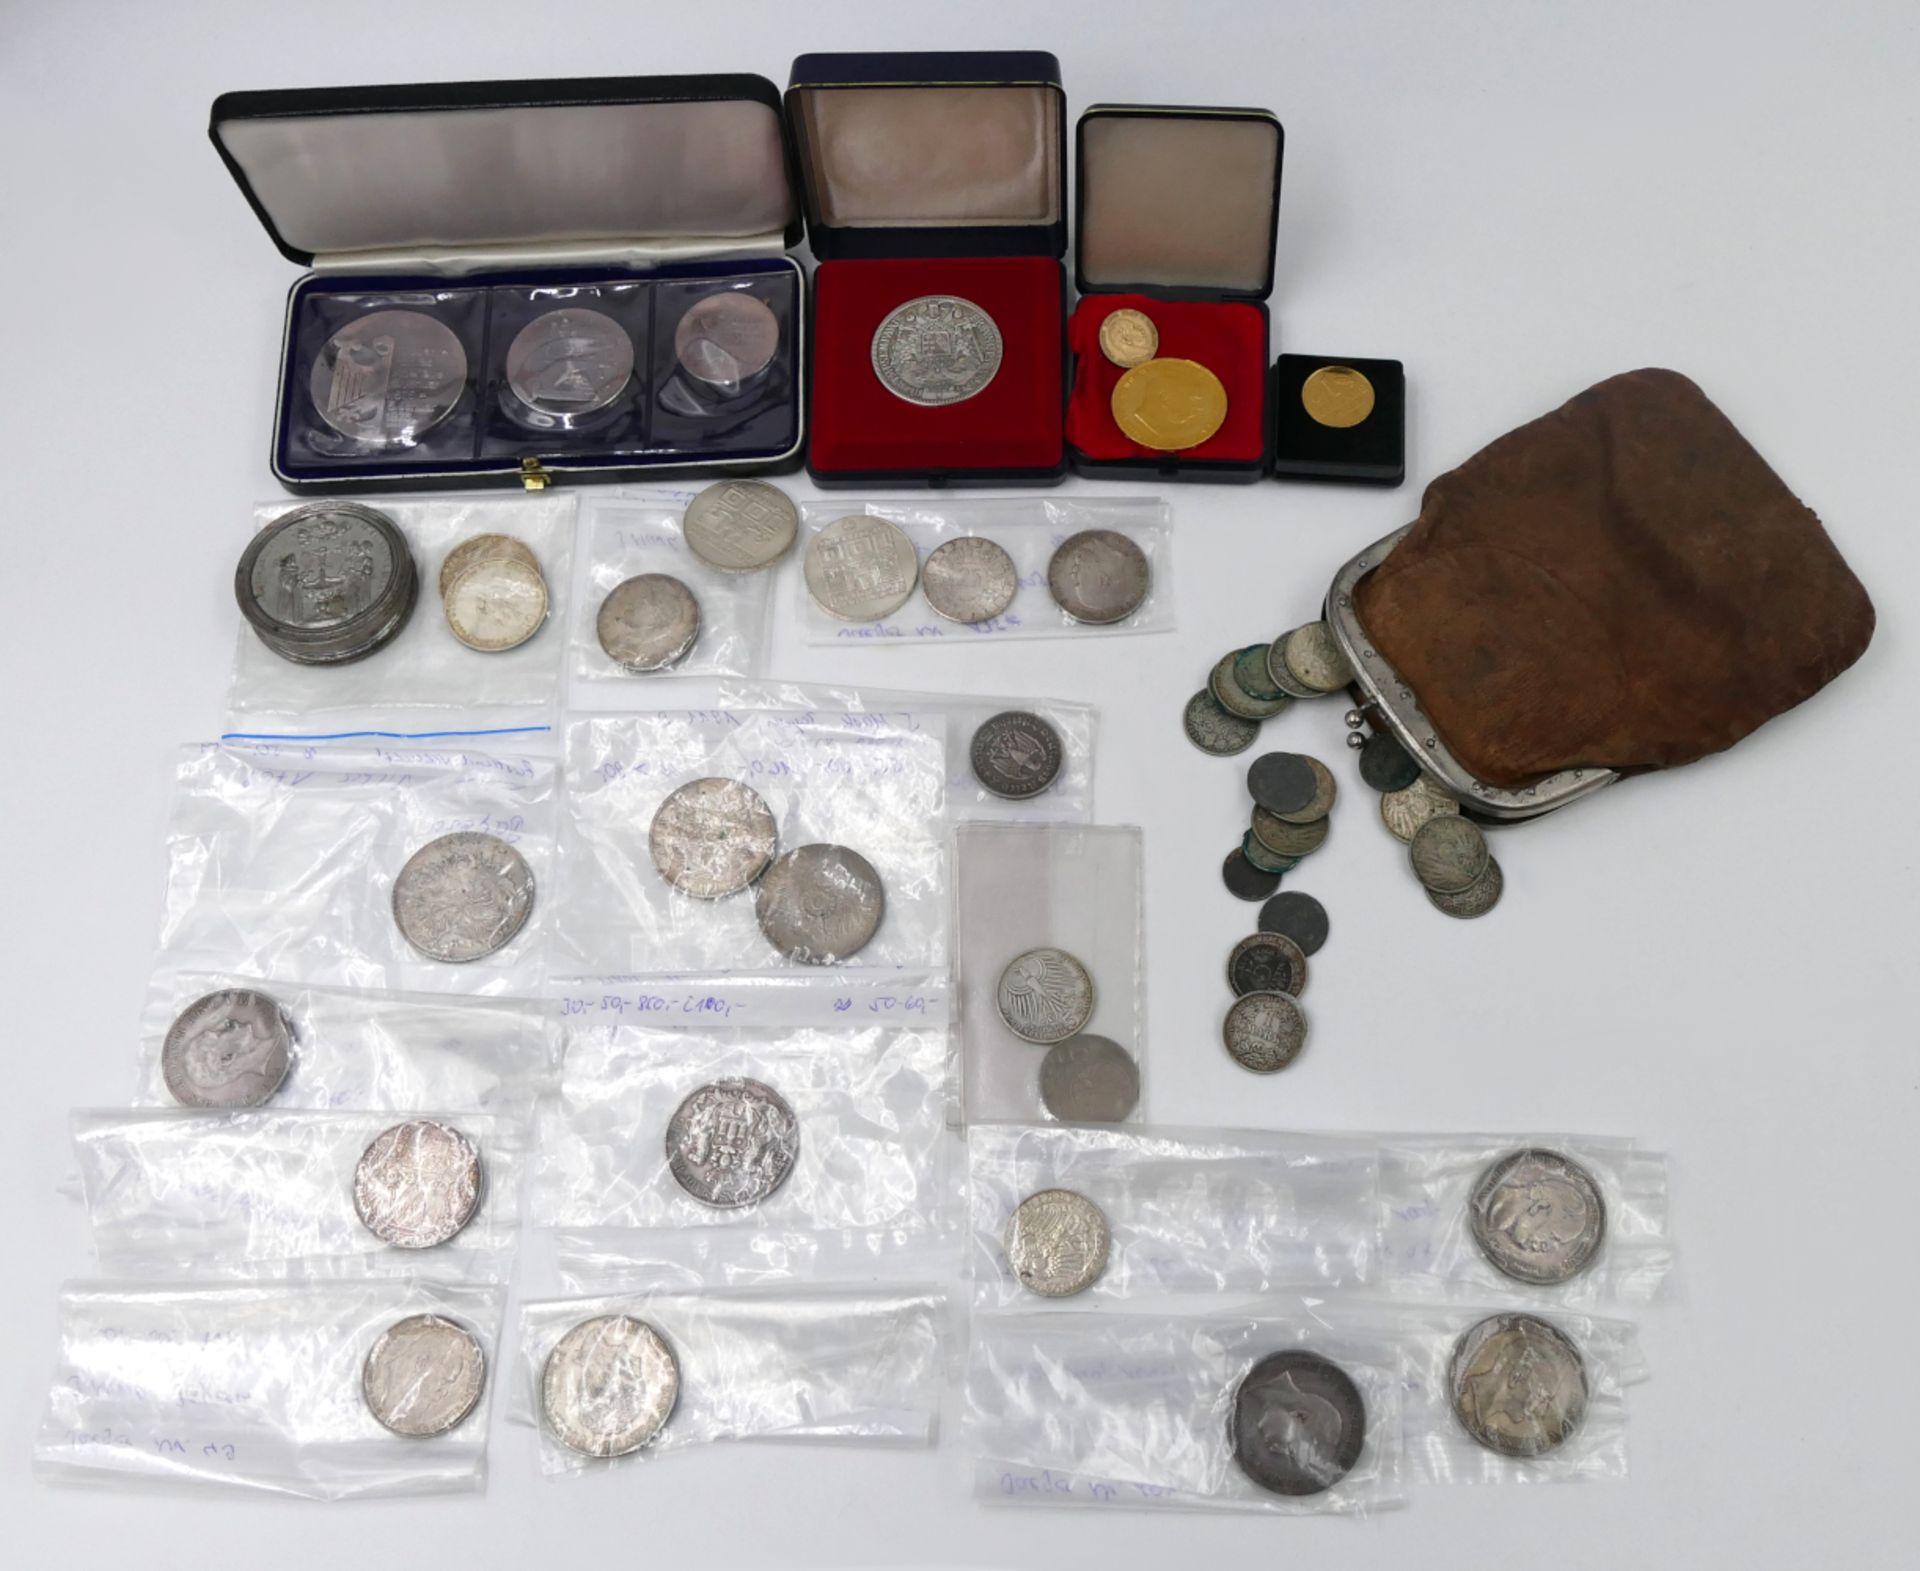 1 Münze Österreich 100 Cor GG, 1 Münze Dt. Reich 10 Mark, wohl GG, 1 Konv. Münzen/Medaillen: Silber/